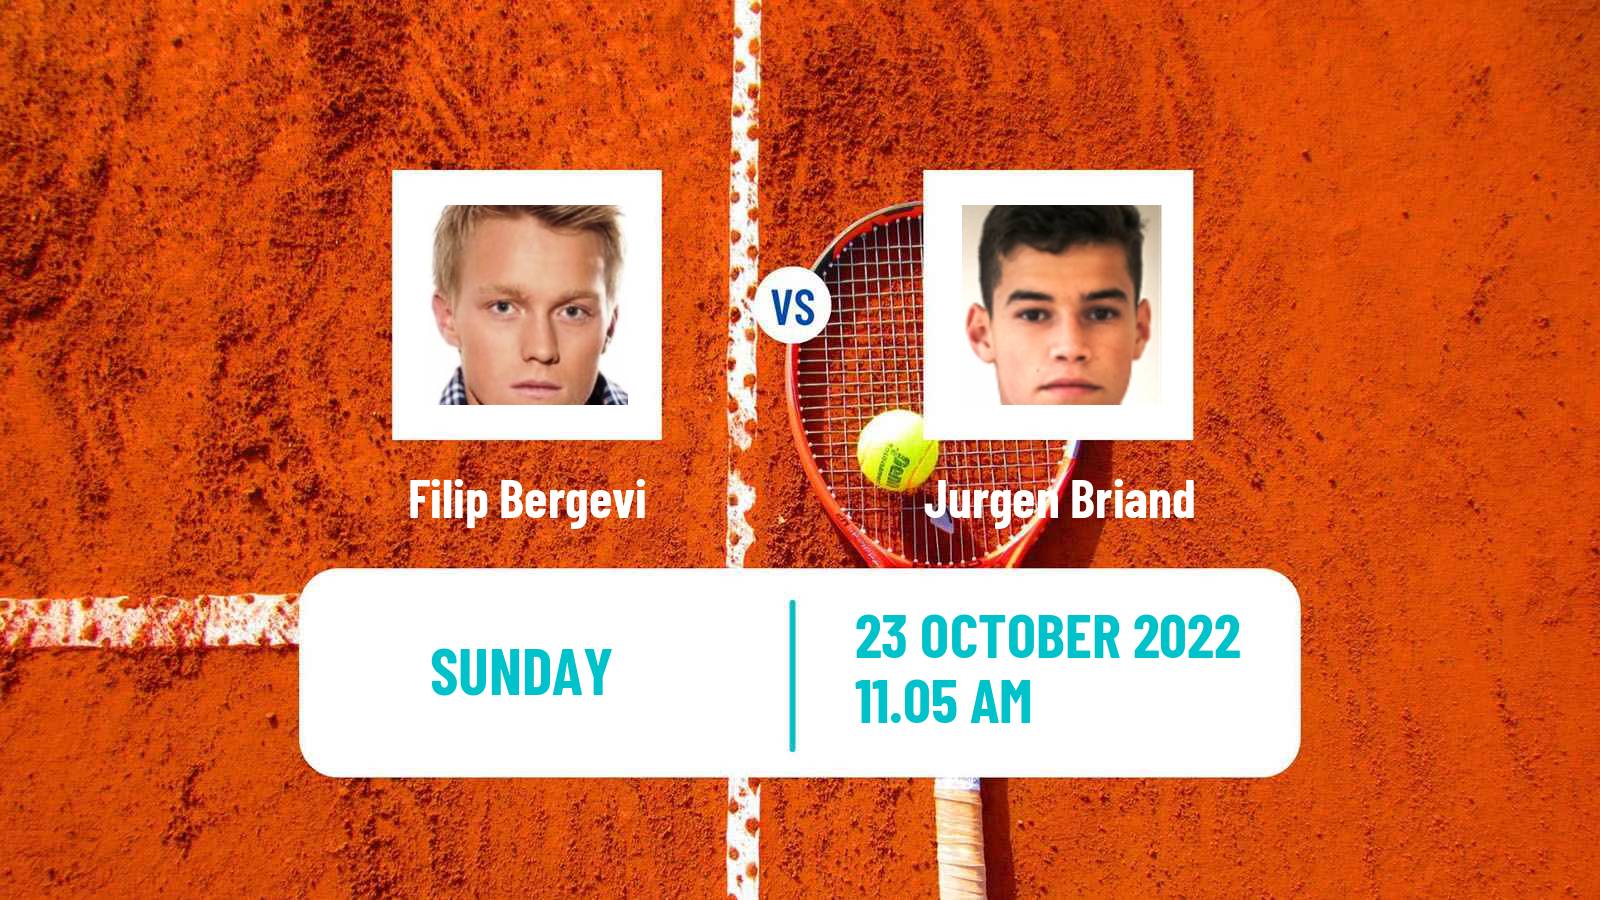 Tennis ATP Challenger Filip Bergevi - Jurgen Briand